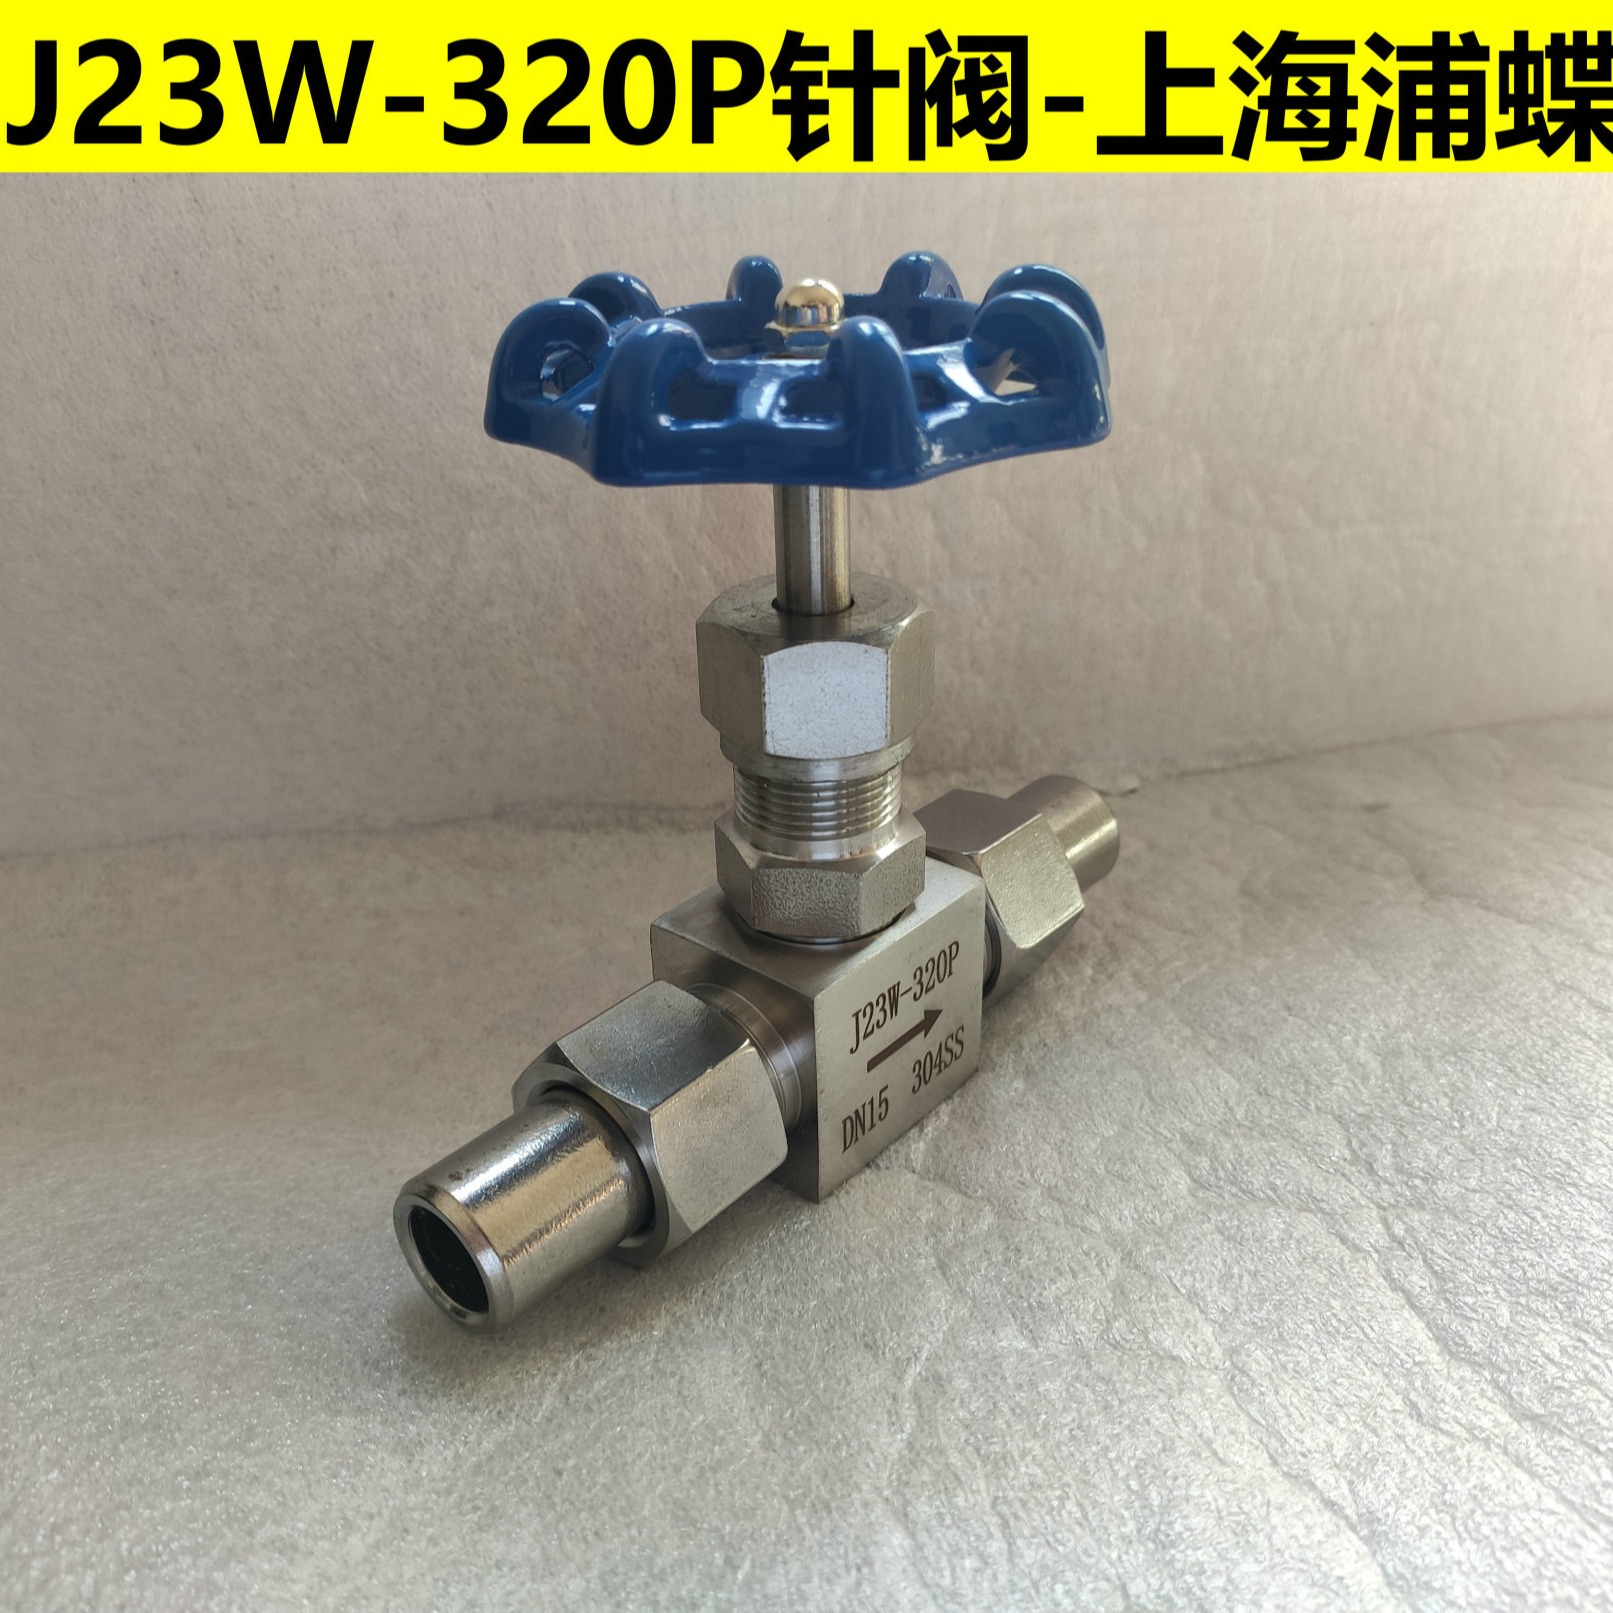 J23W-320P不锈钢针型阀 上海浦蝶品牌